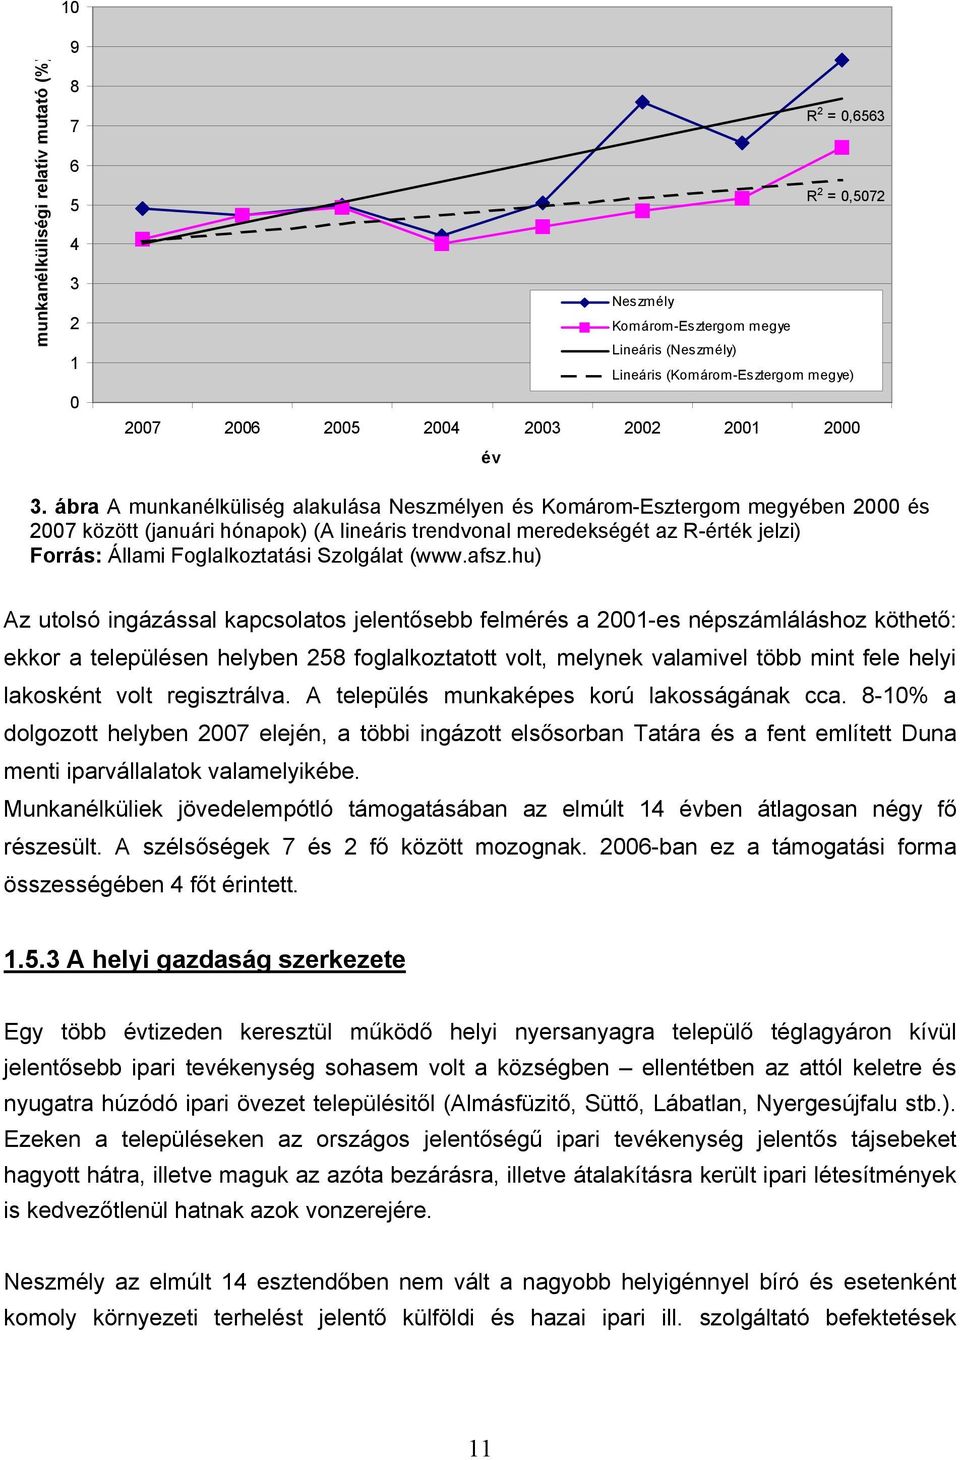 ábra A munkanélküliség alakulása Neszmélyen és Komárom-Esztergom megyében 2000 és 2007 között (januári hónapok) (A lineáris trendvonal meredekségét az R-érték jelzi) Forrás: Állami Foglalkoztatási